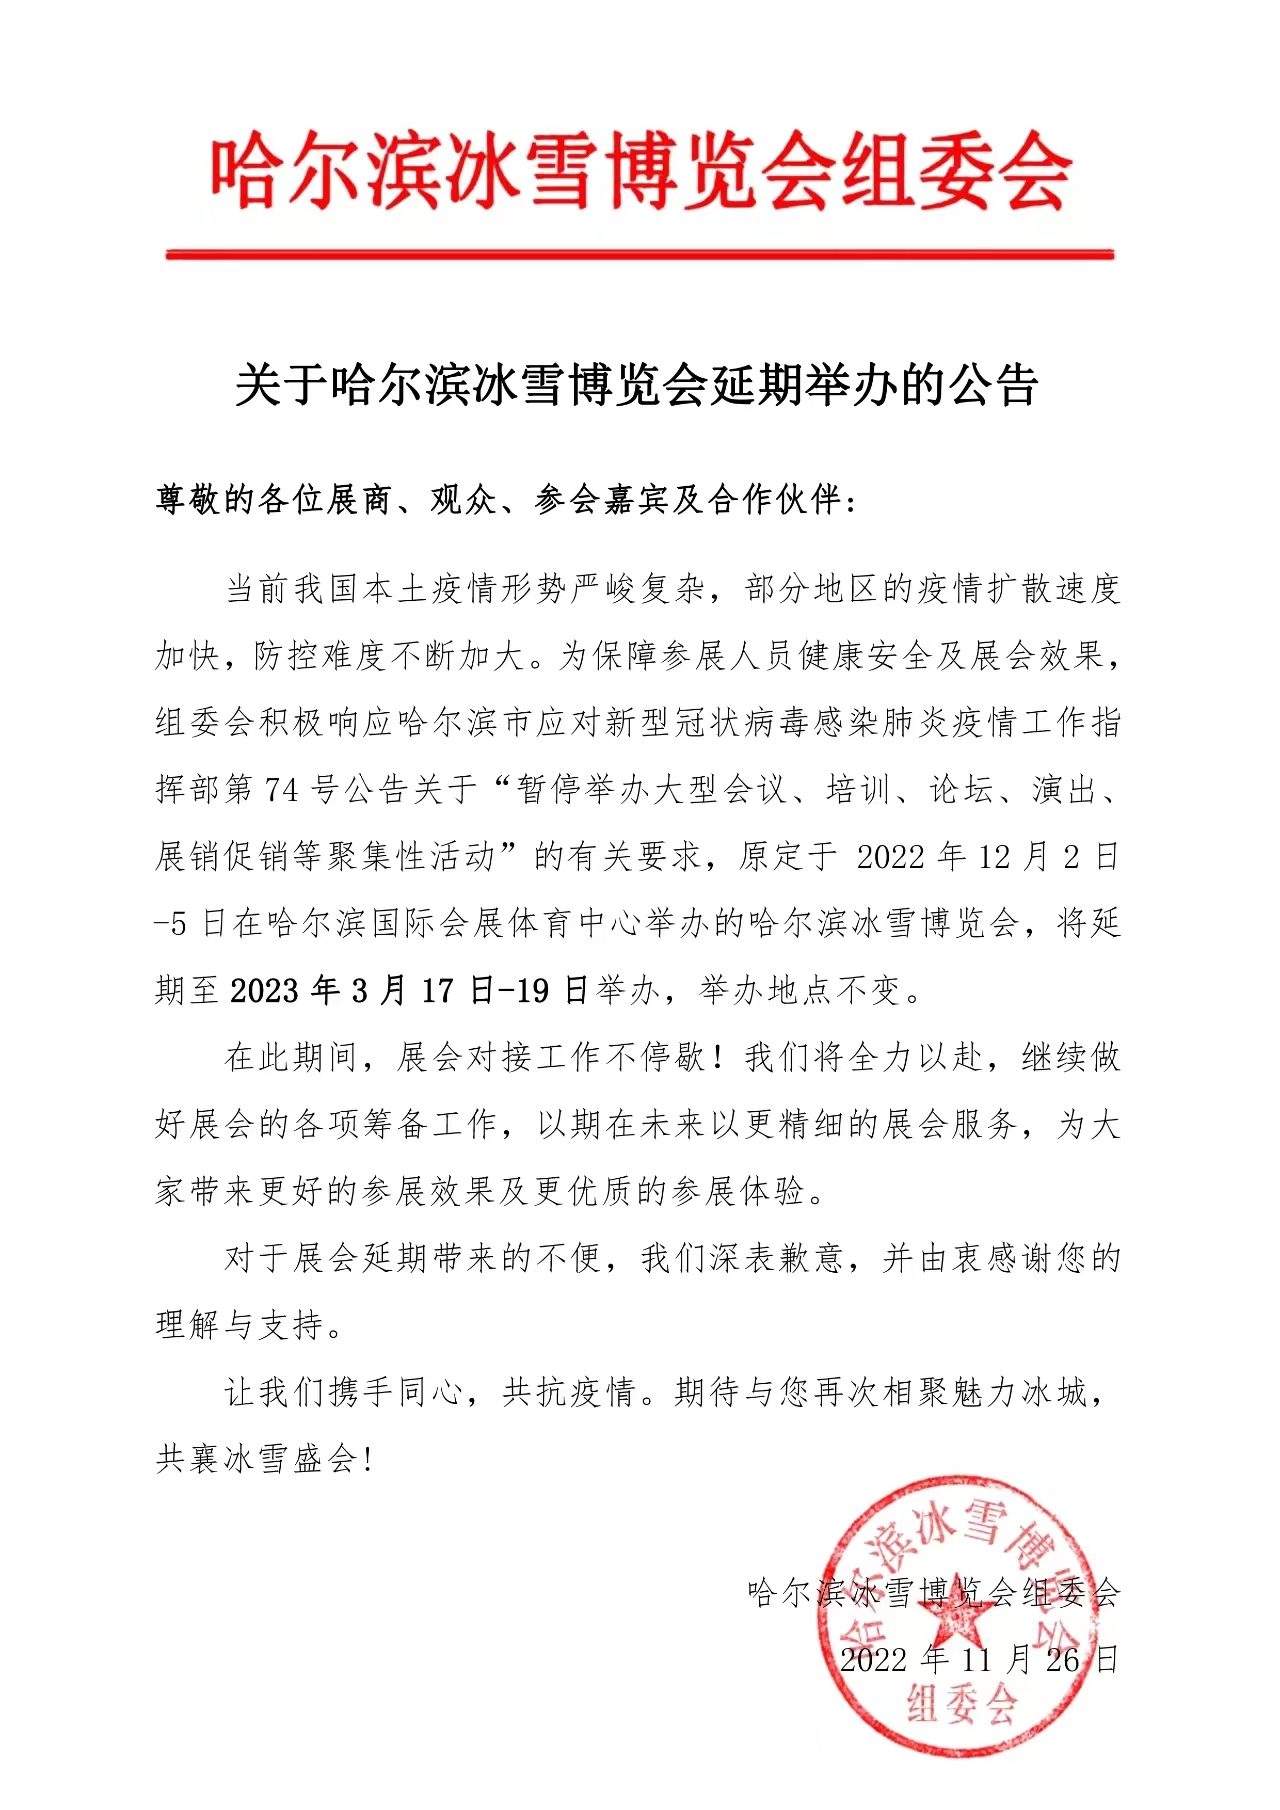 【重要通知】关于哈尔滨冰雪博览会延期举办的公告(图1)